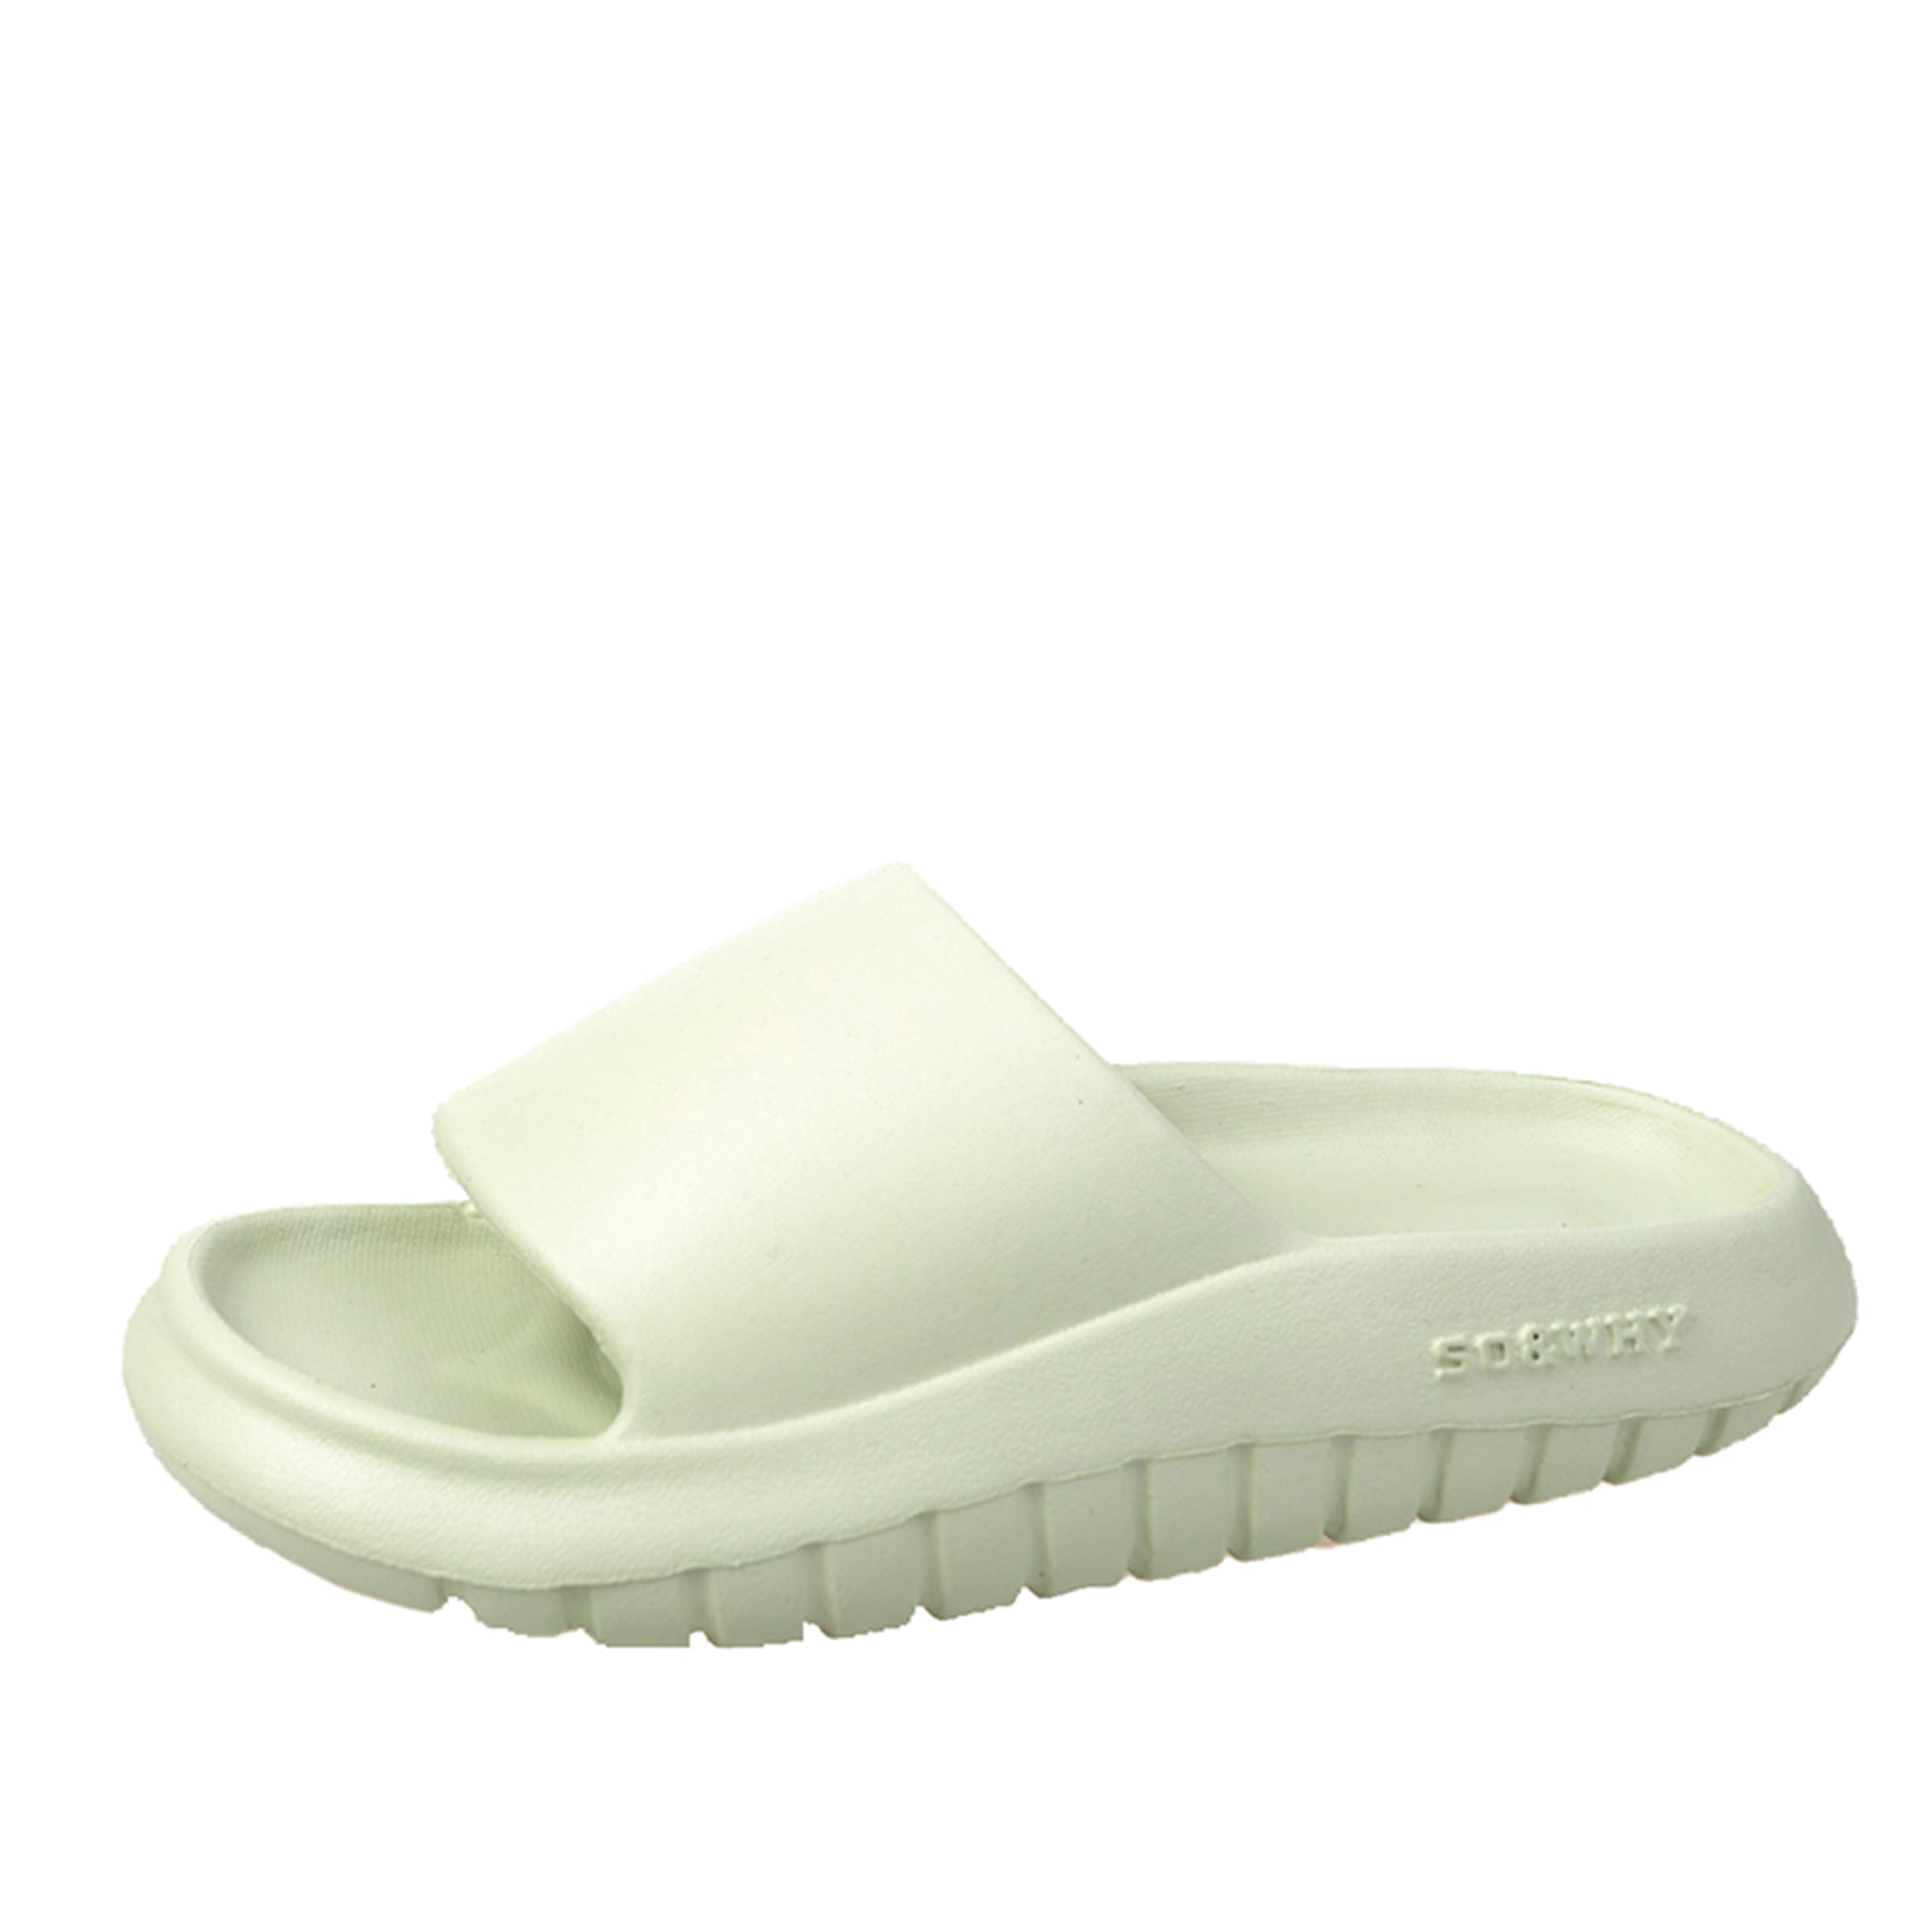 Litfun Platform Slide Sandals for Men Women Lightweight Open Toe Shower Shoes 